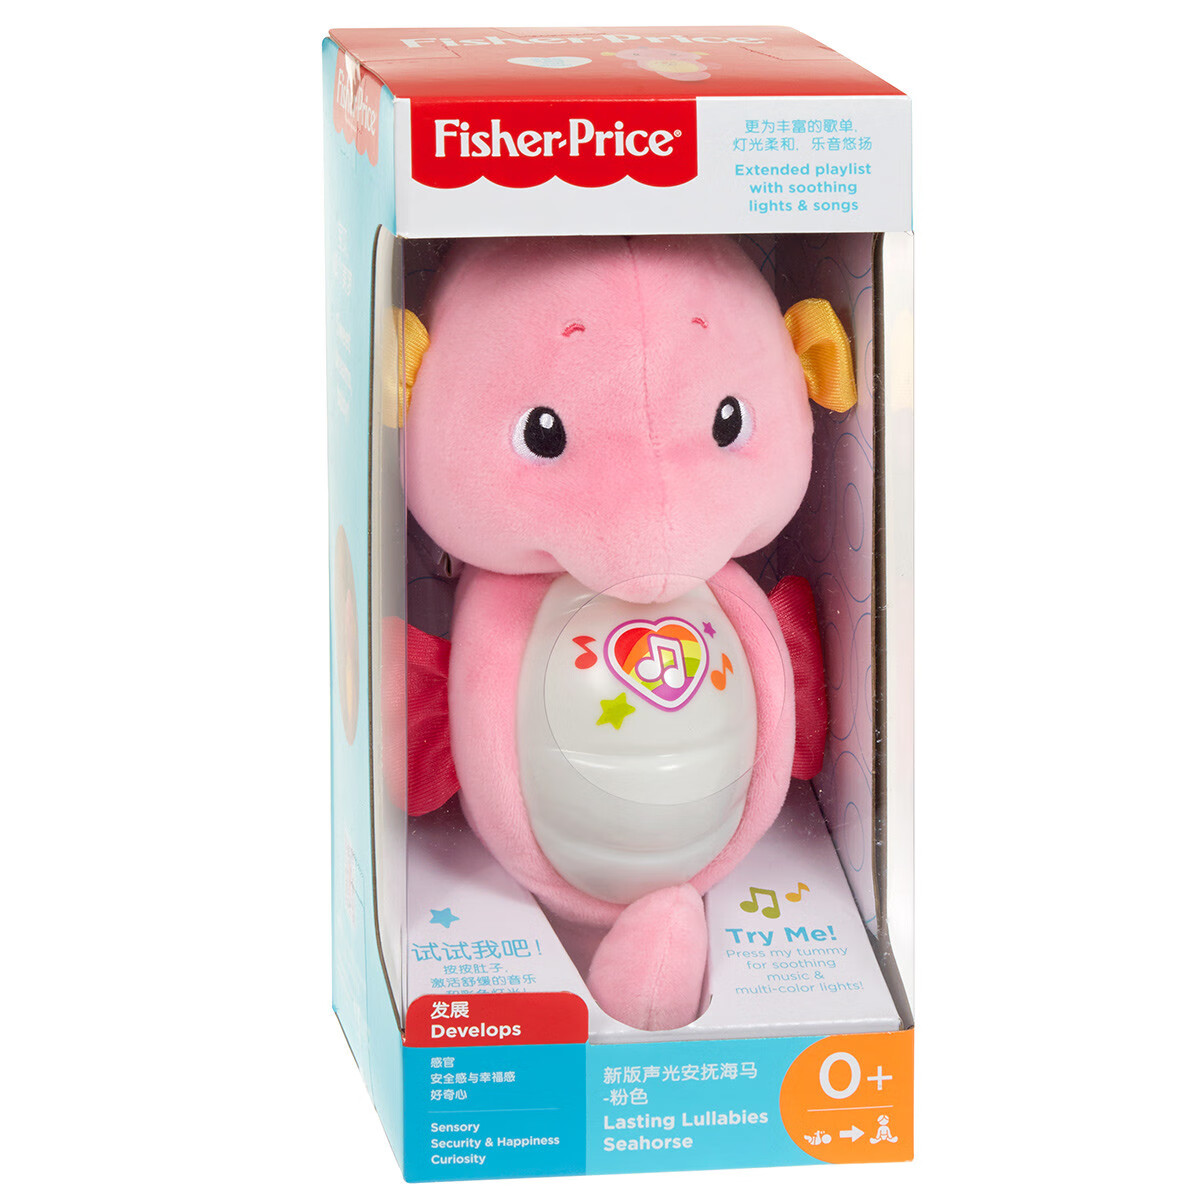 费雪费雪婴儿声光安抚新款海马玩具新生儿宝宝安抚玩偶GCK71 新版费雪海马-粉色